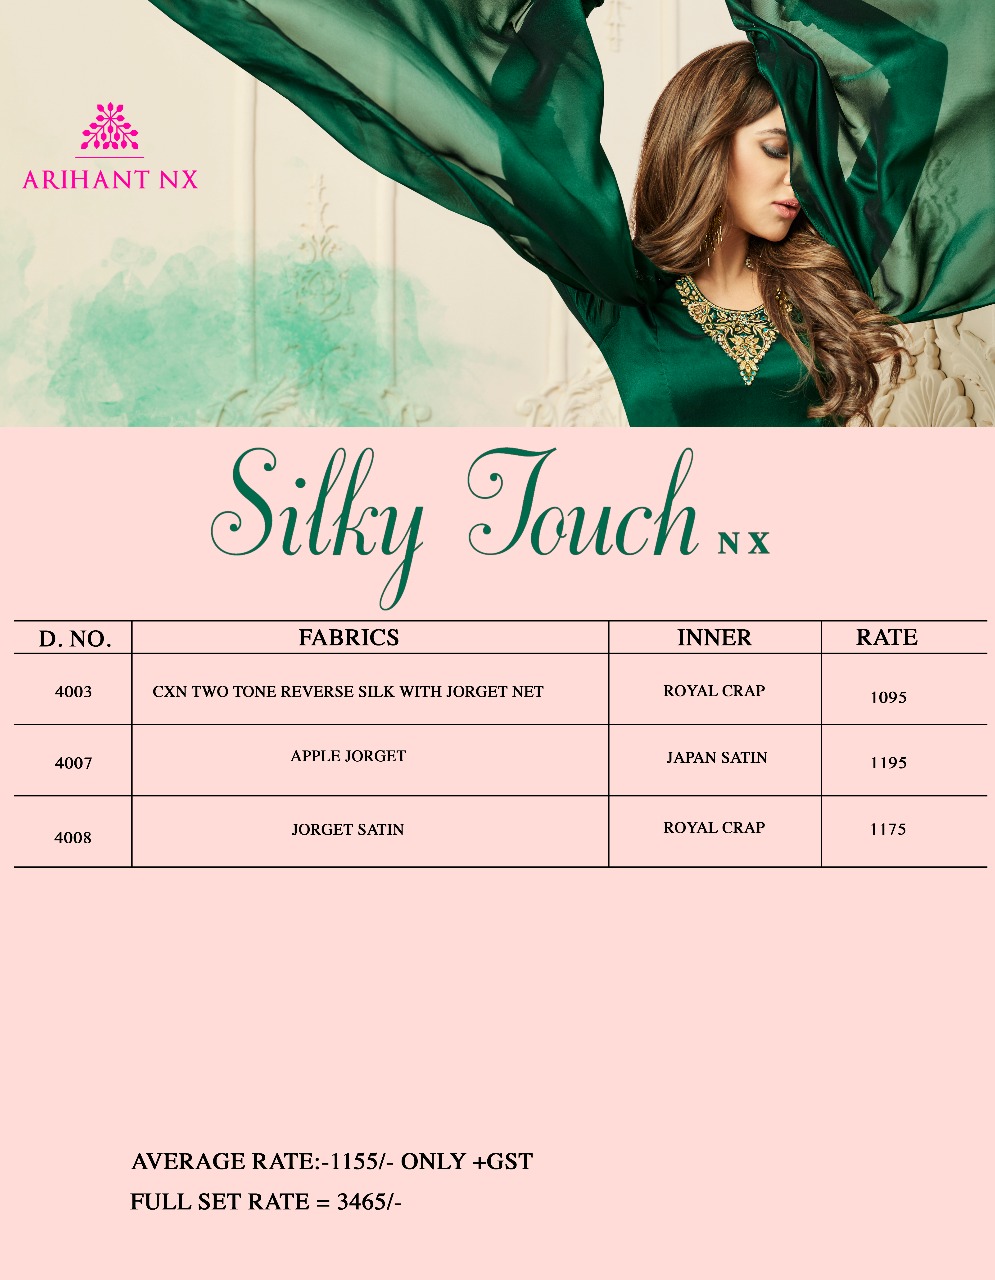 Arihant designer silky touch Nx kurties Catalog Supplier